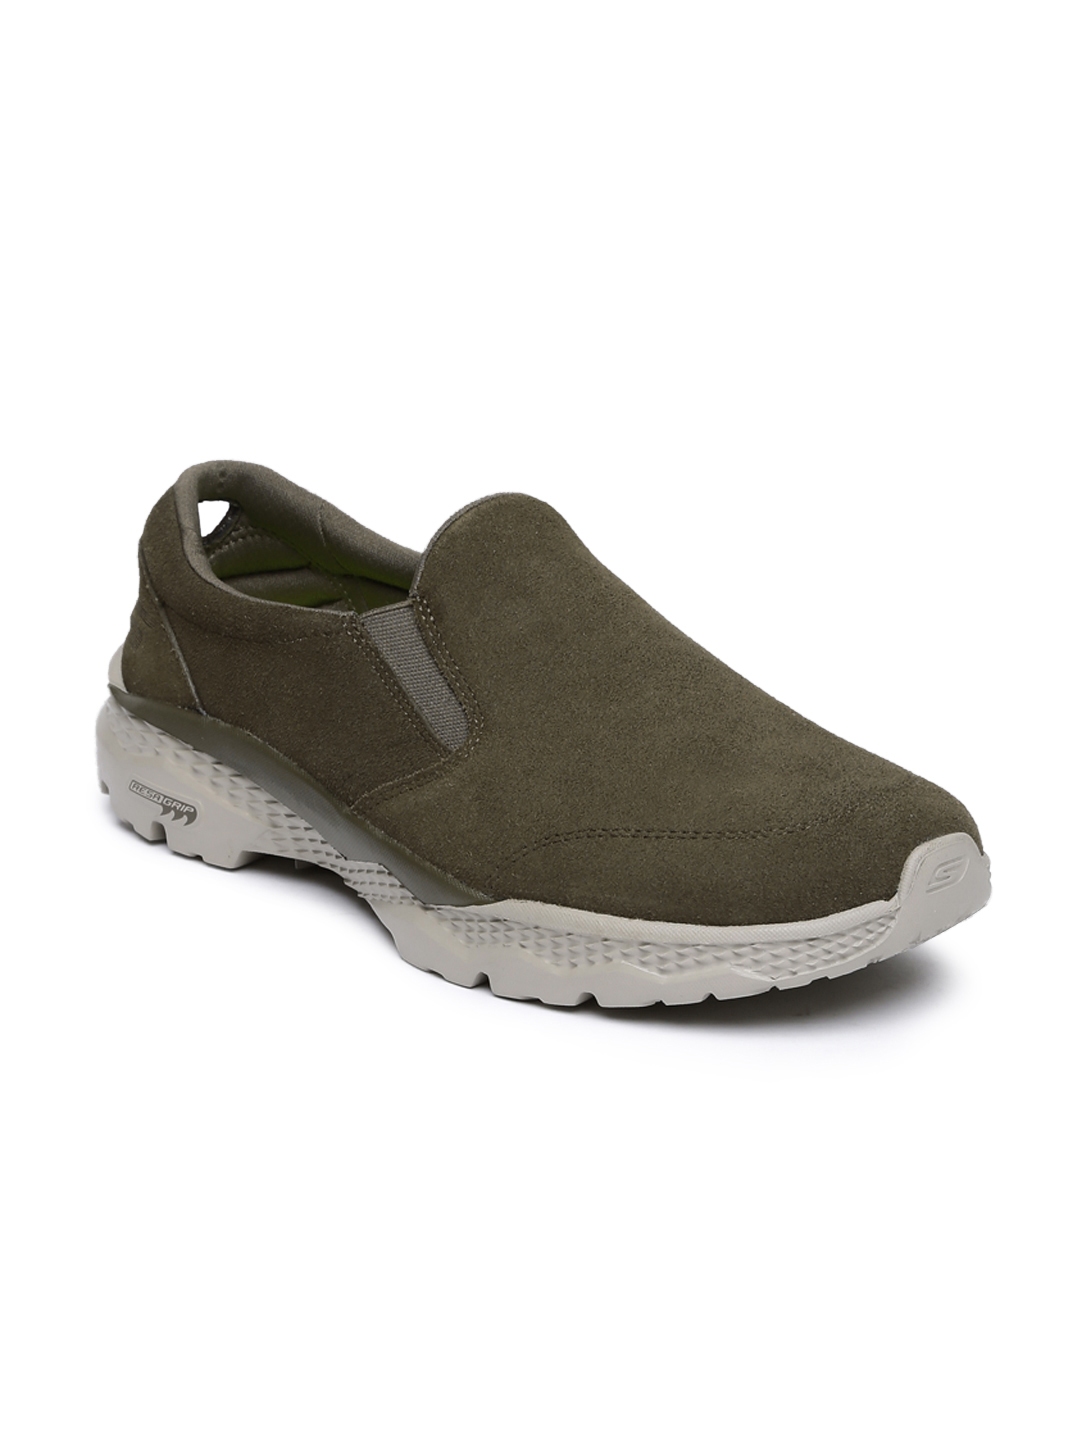 Buy Skechers Men Olive Green Go Walk Outdoor Suede Walking Shoes ...